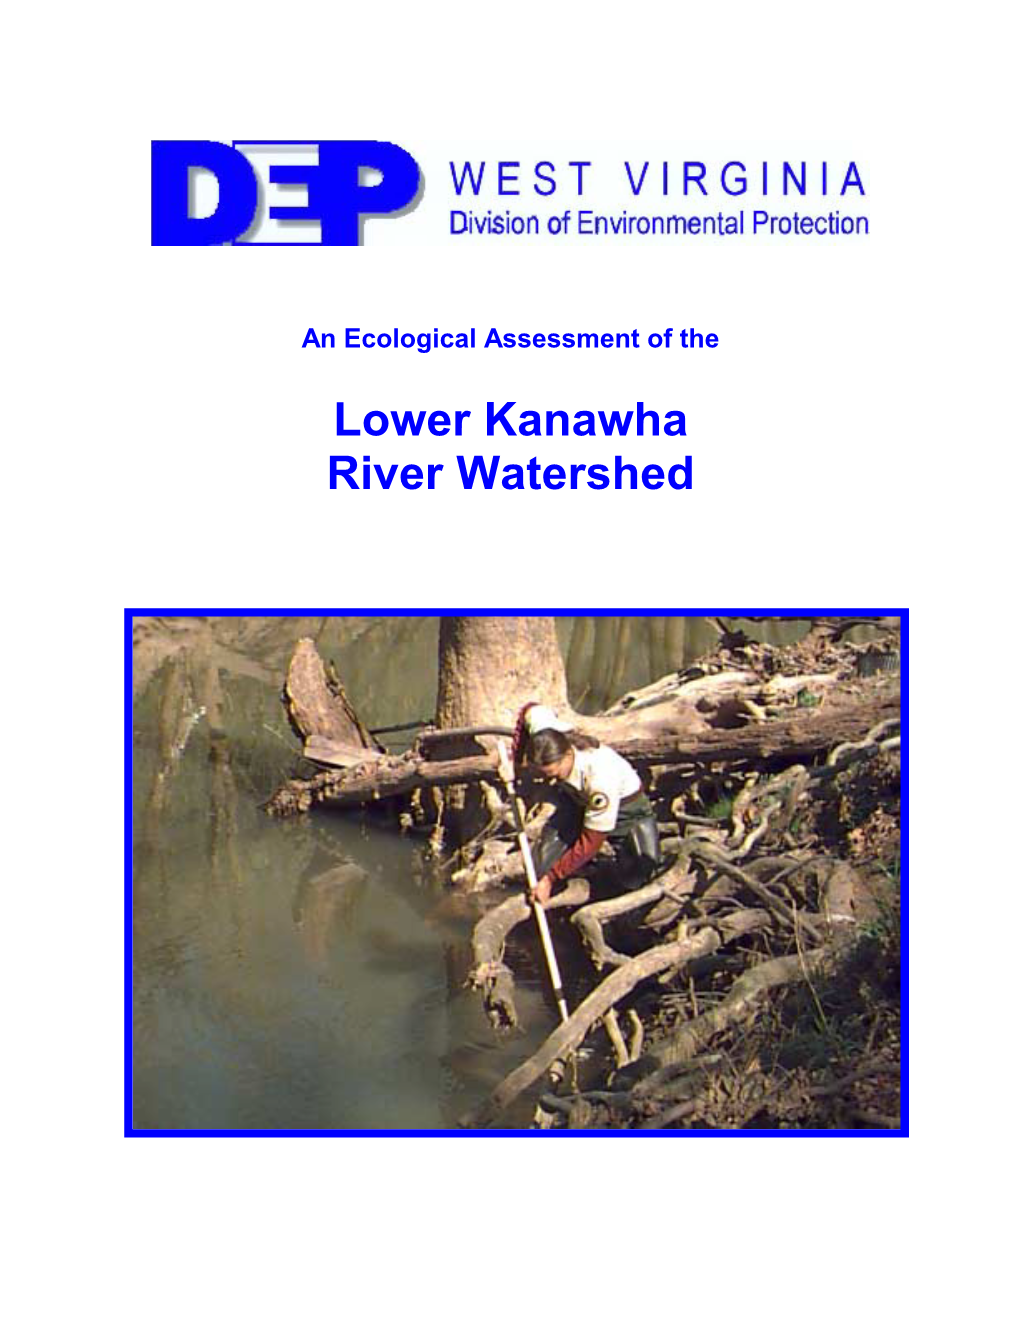 Lower Kanawha River Watershed